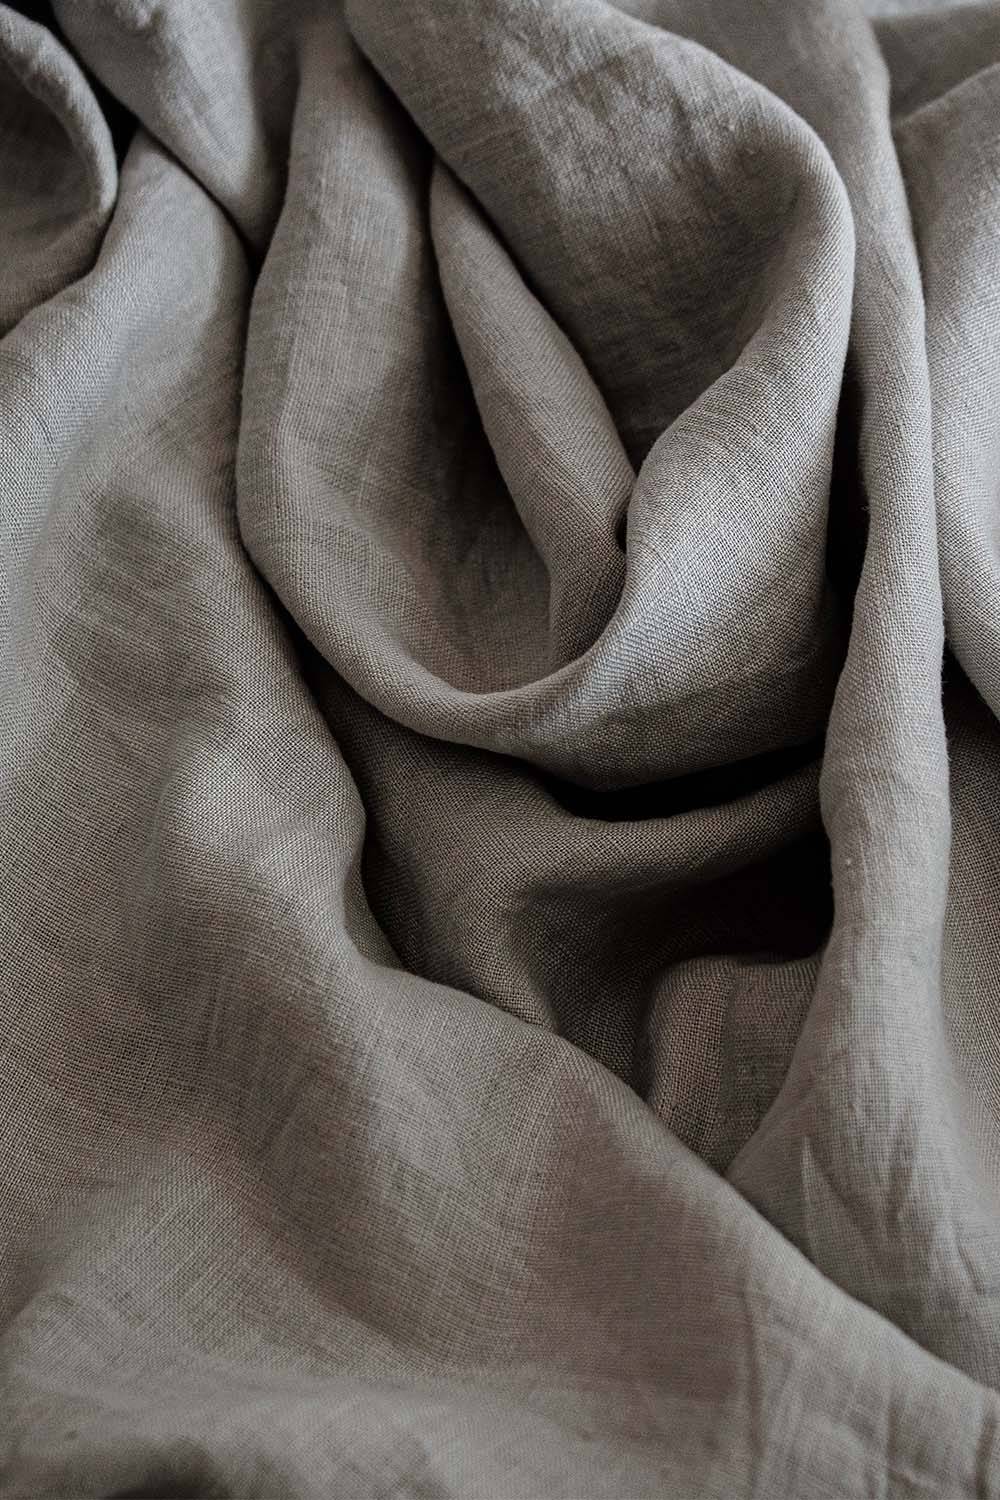 khadi fabric cotton comparison